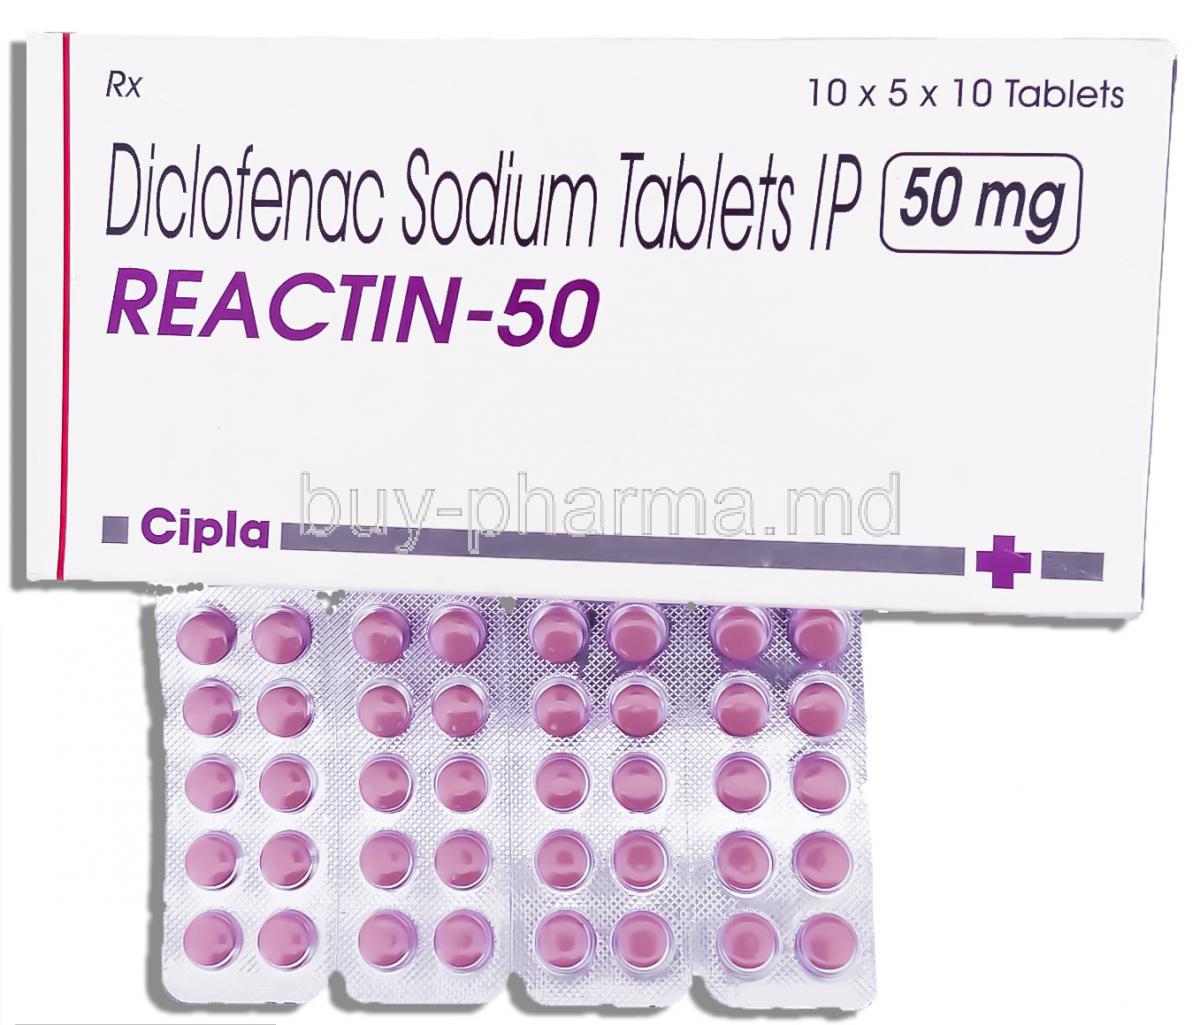 Reactin, Diclofenac 50 mg tablets